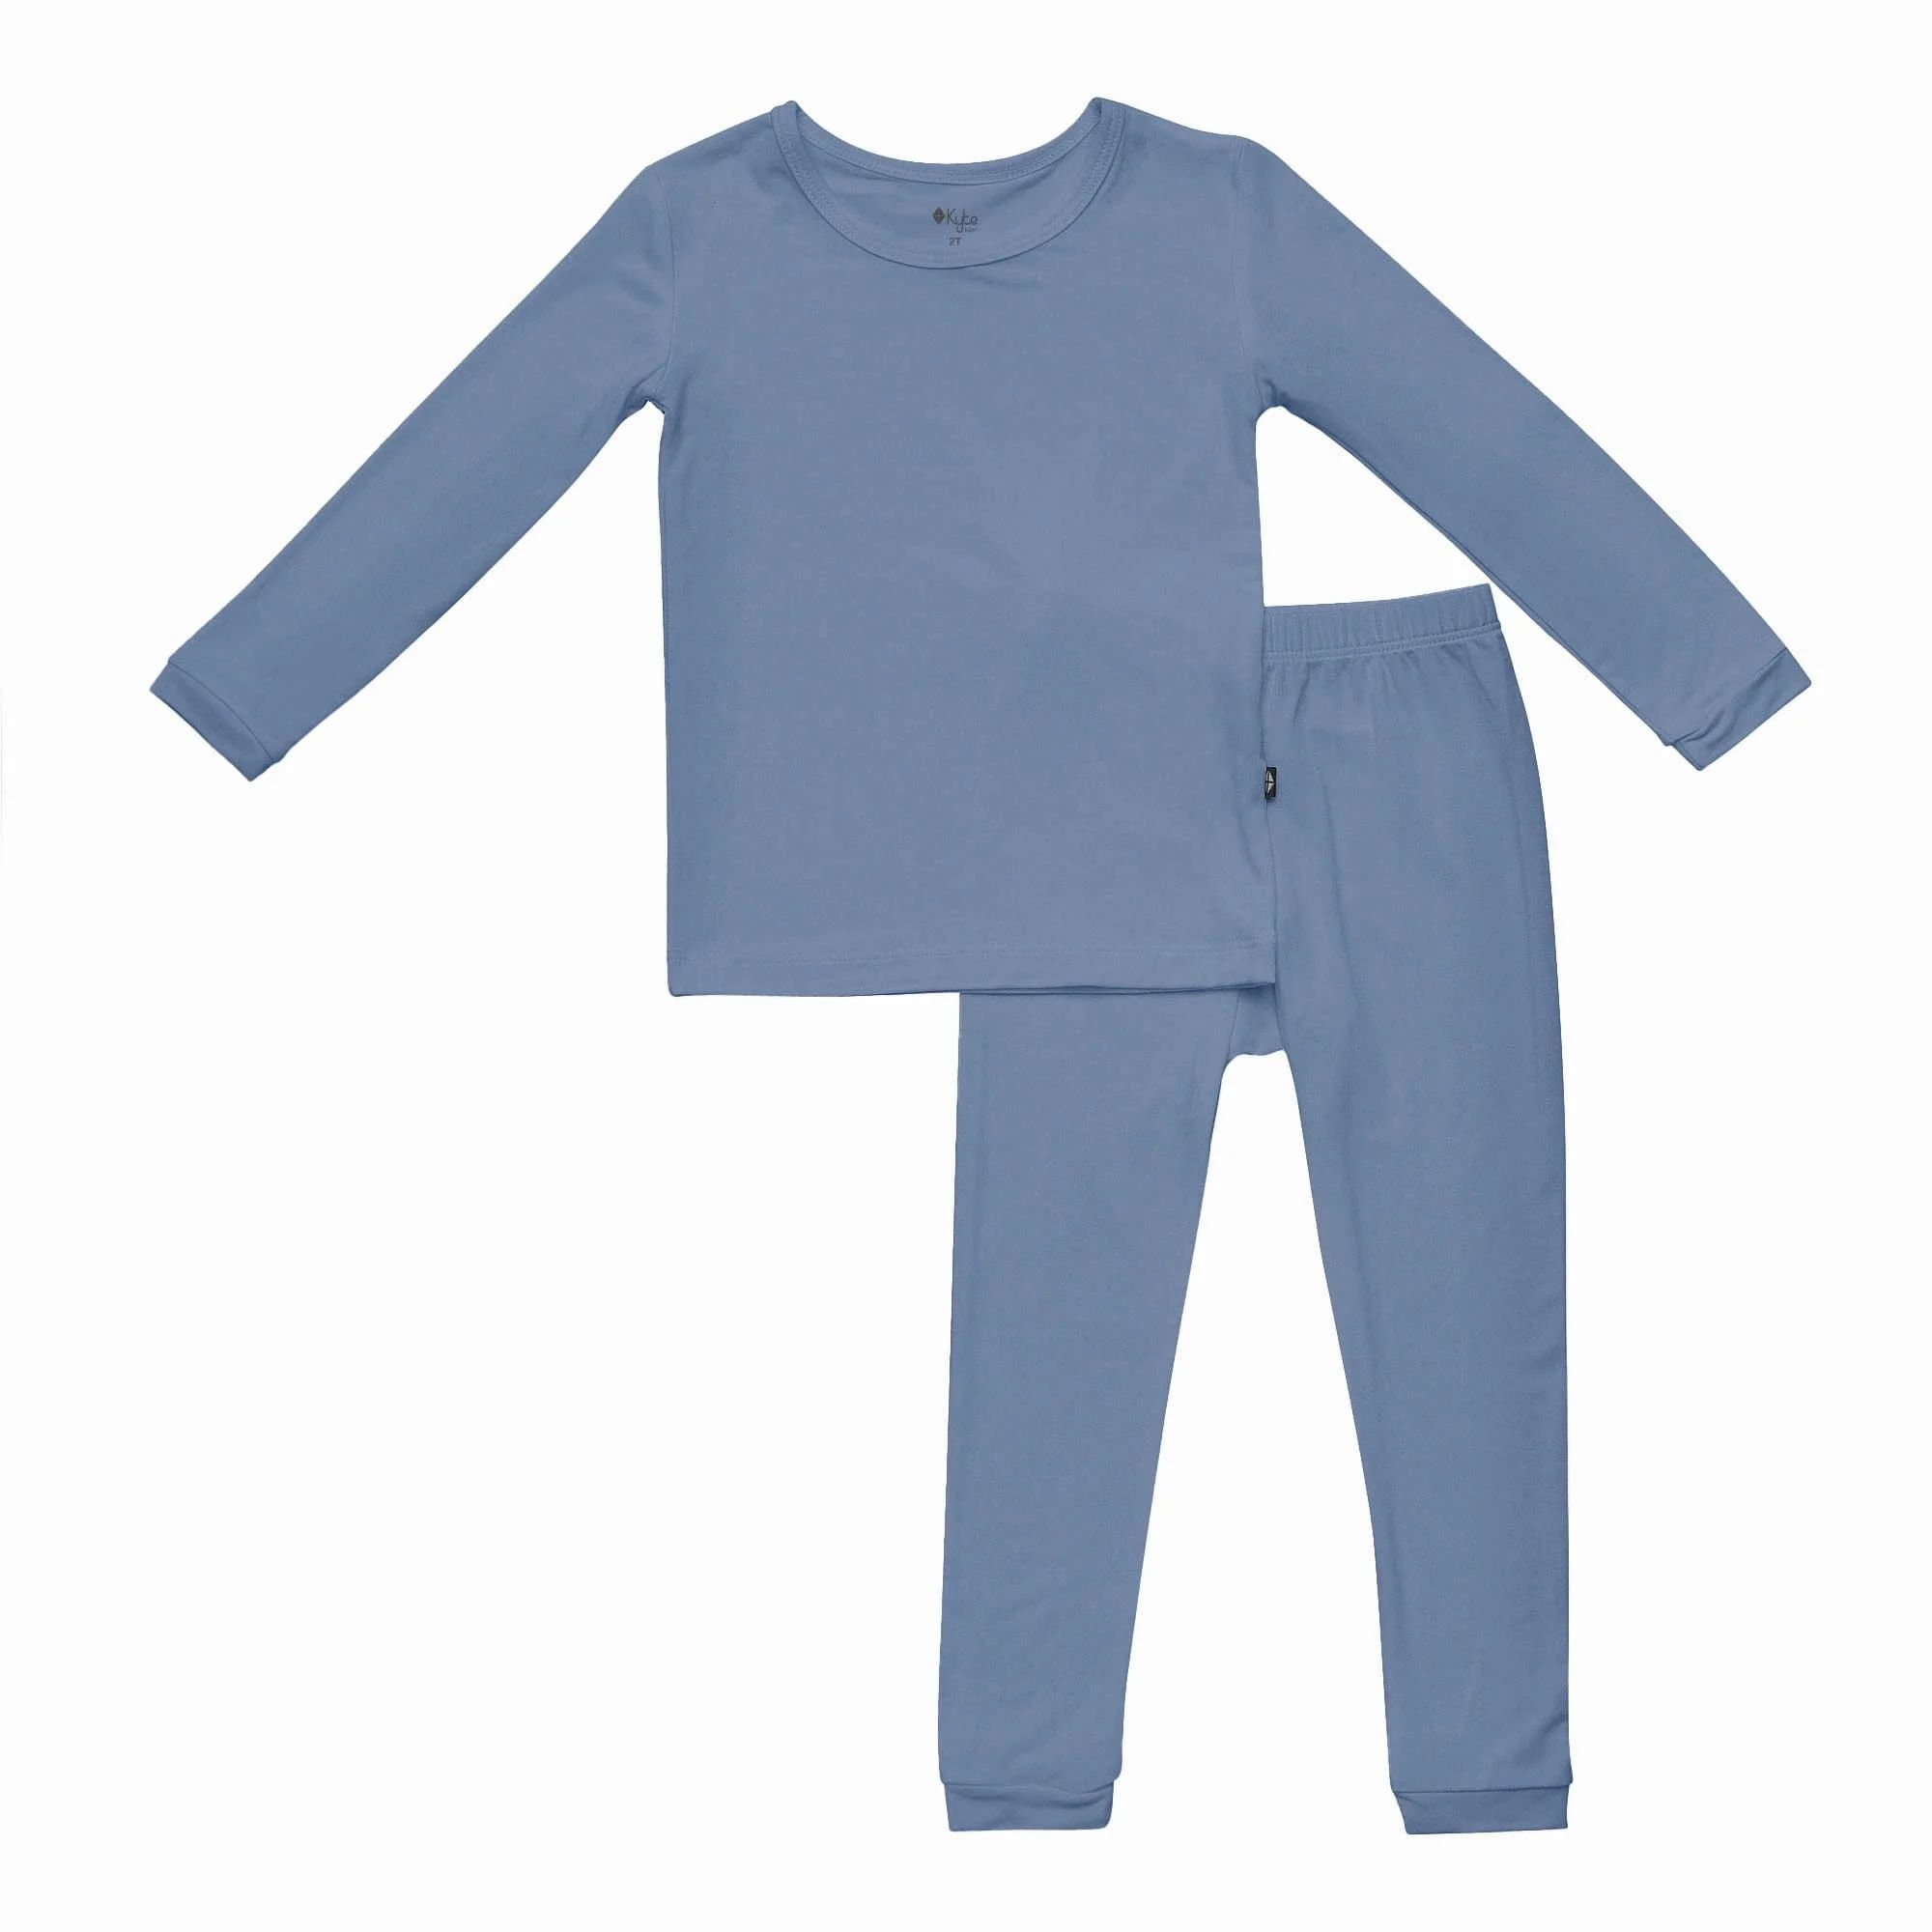 Toddler Pajama Set in Slate | Kyte BABY